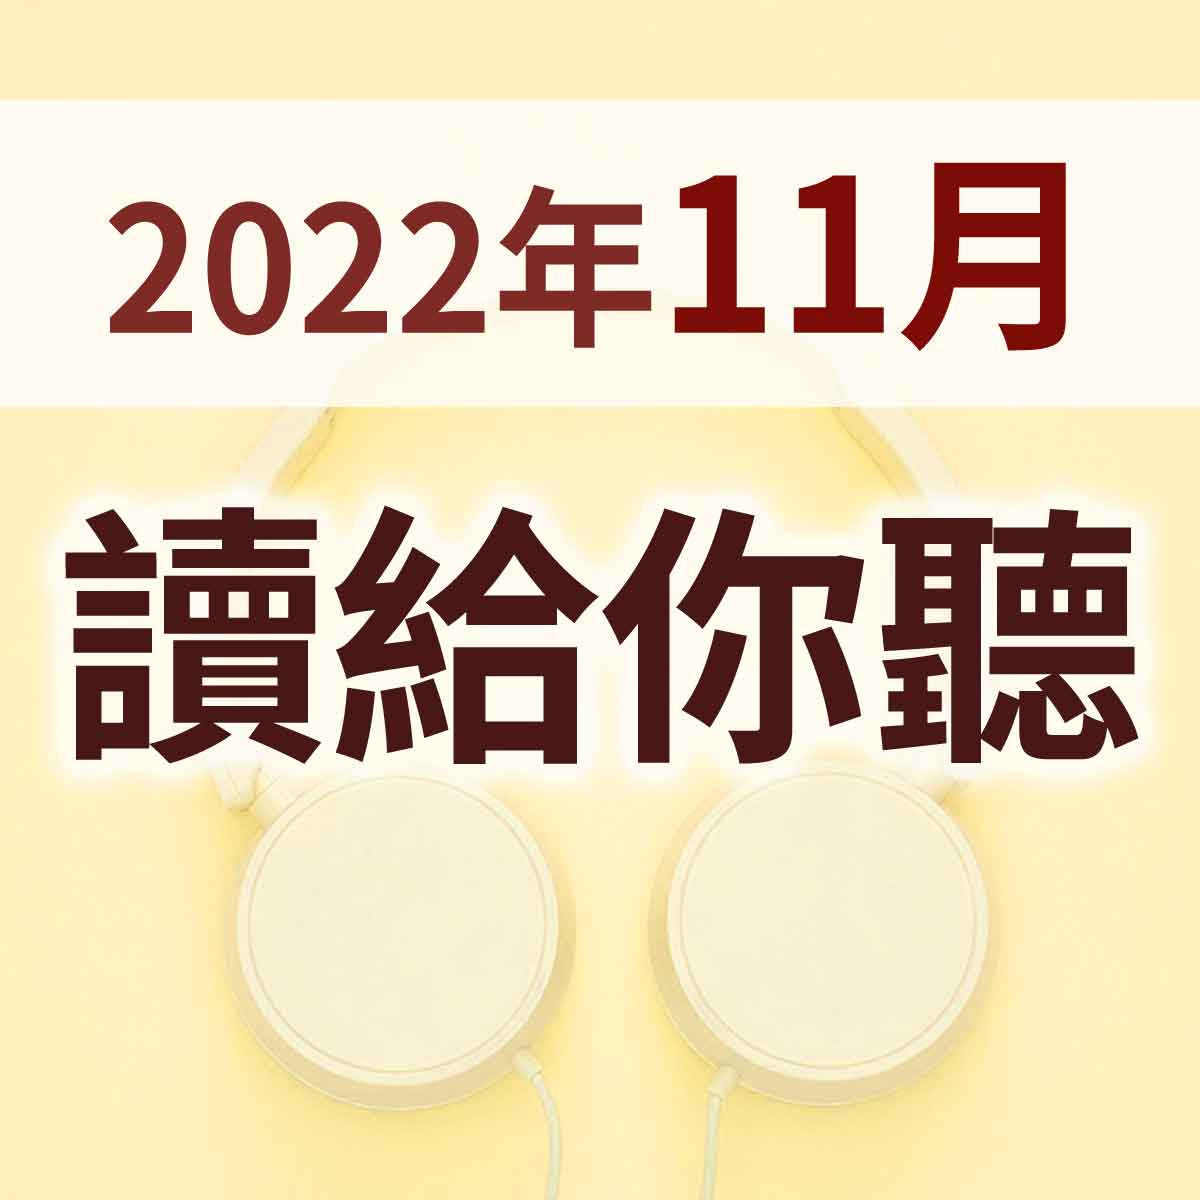 2022年11月 - 讀給你聽 聖靈的果子 02 仁愛封面圖